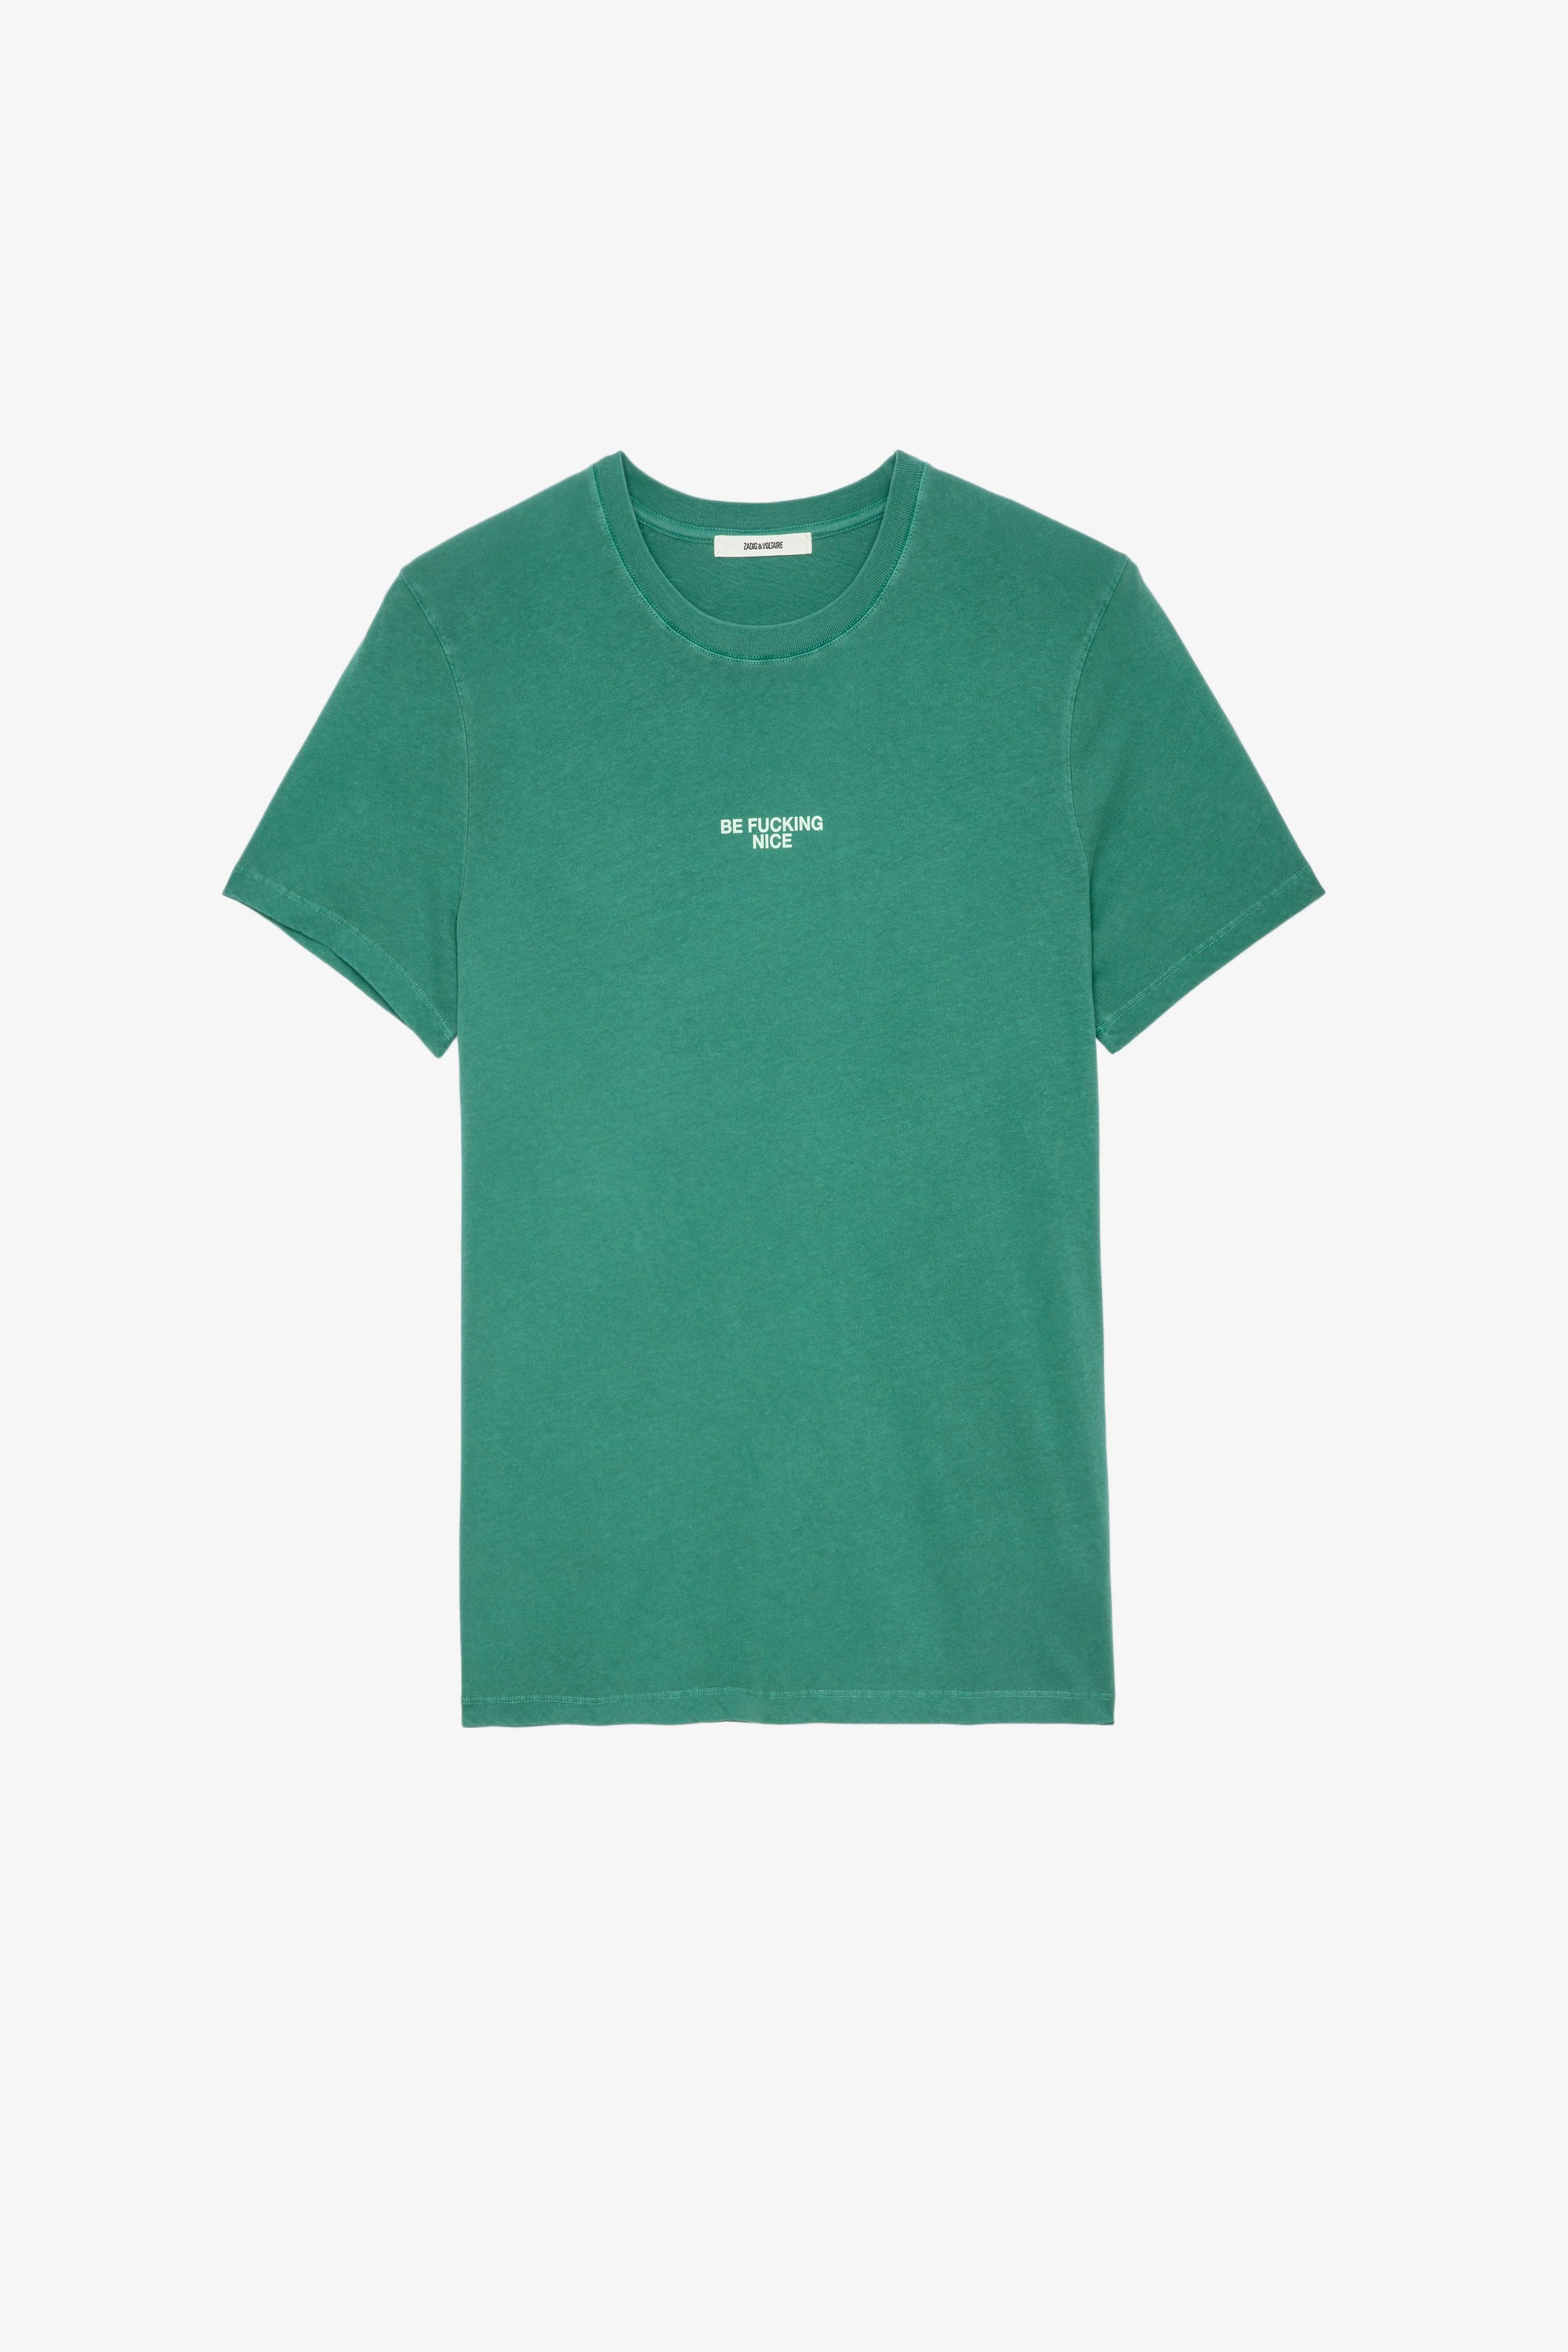 T-shirt Ted T-shirt en coton vert orné d'une inscription "Be fucking nice" Homme